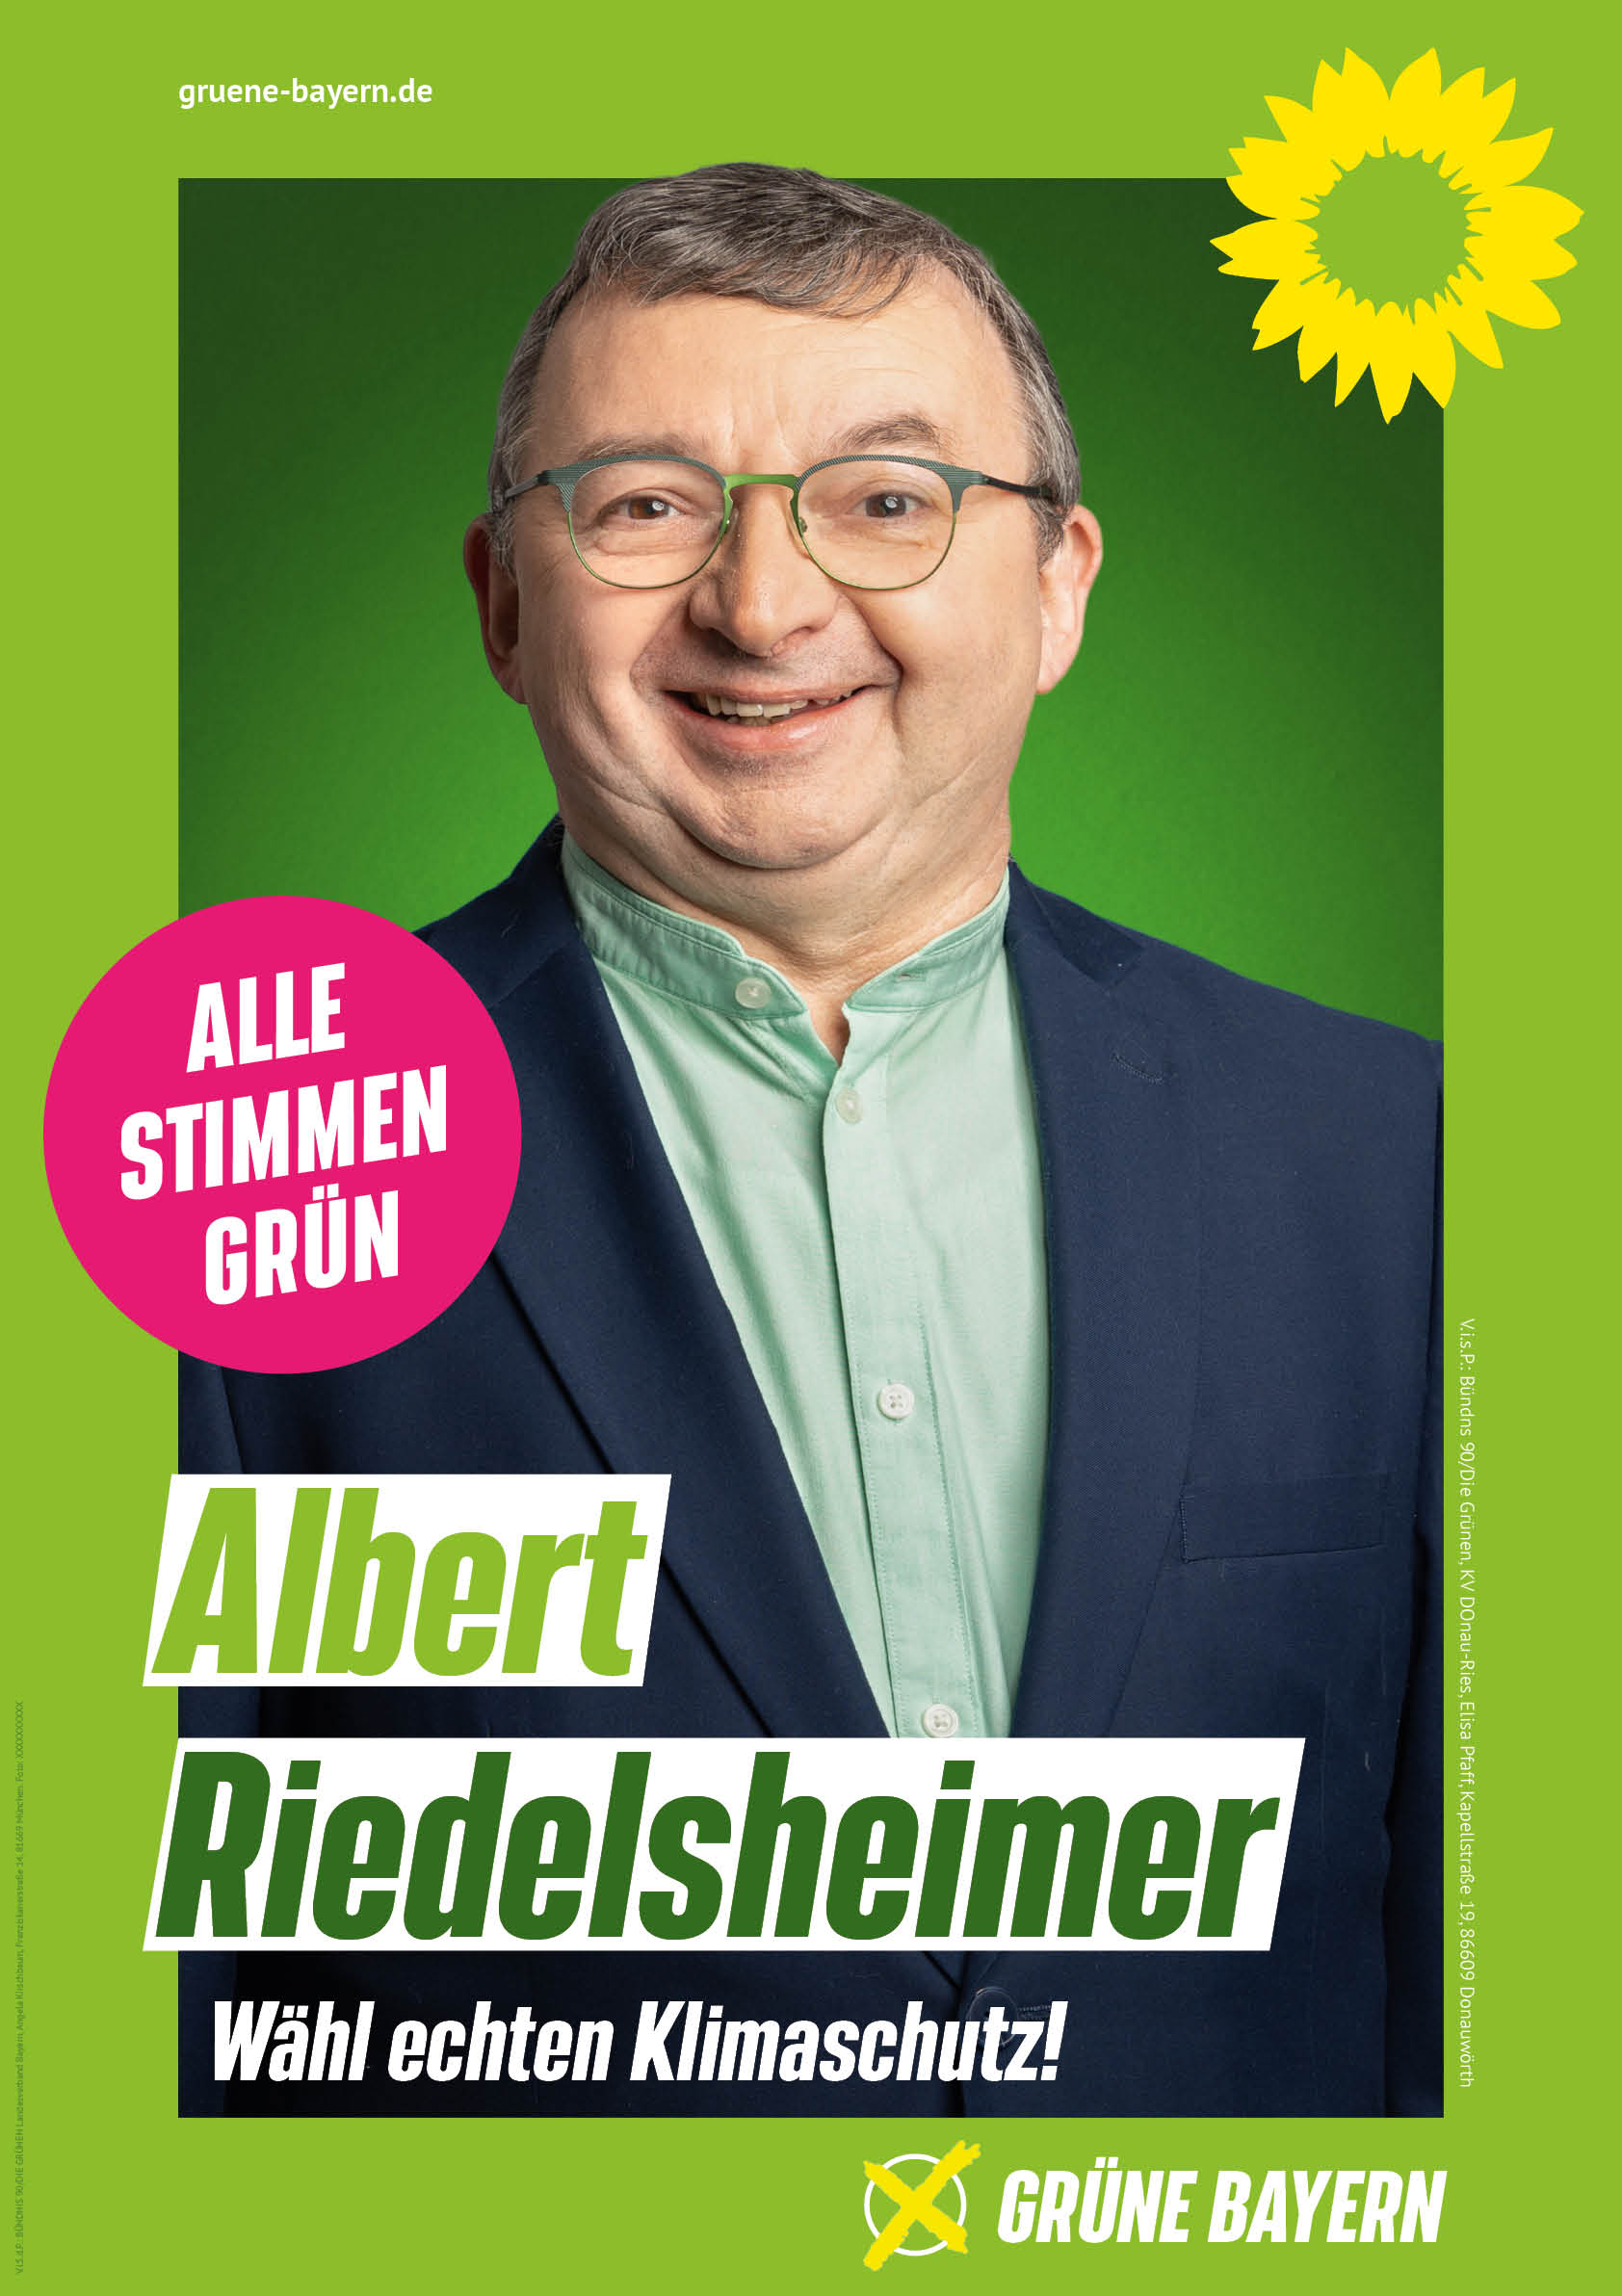 Über Albert Riedelsheimer